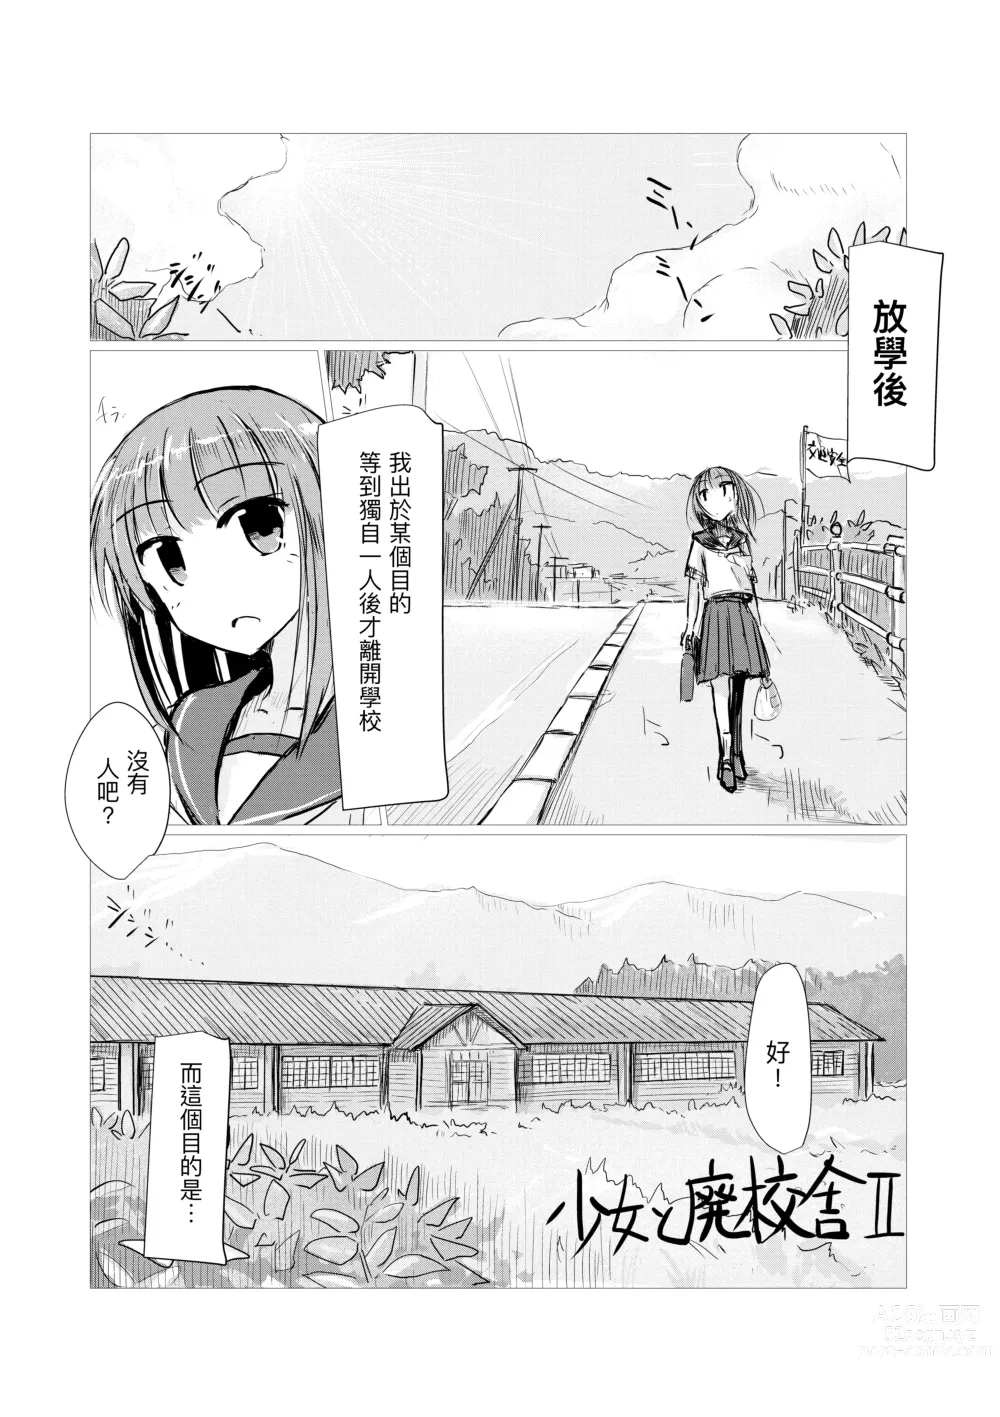 Page 3 of doujinshi Shoujo to Haikousha II